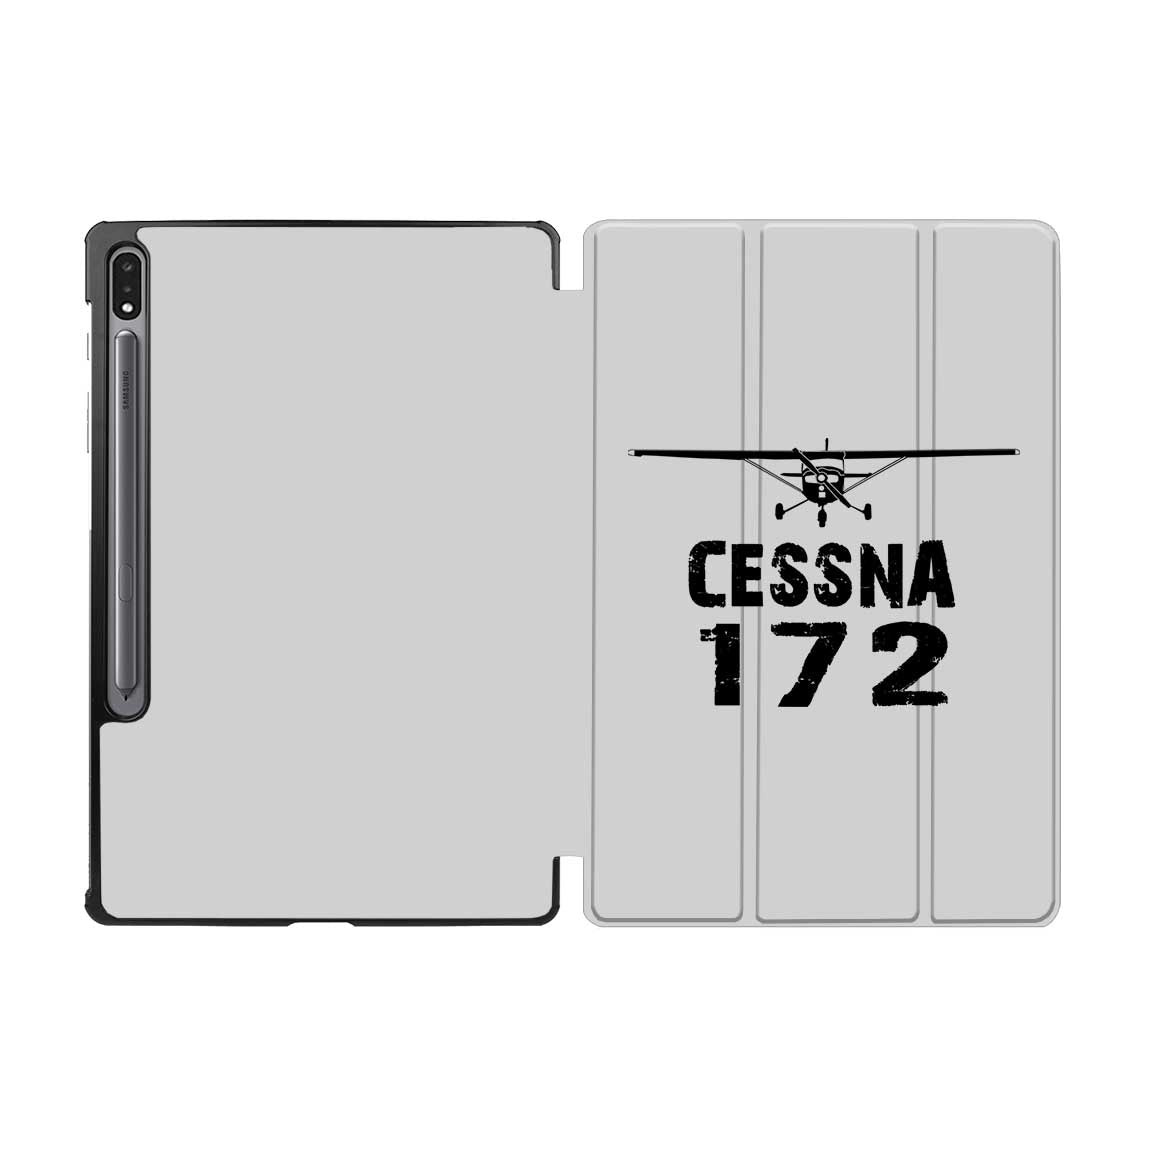 Cessna 172 & Plane Designed Samsung Tablet Cases